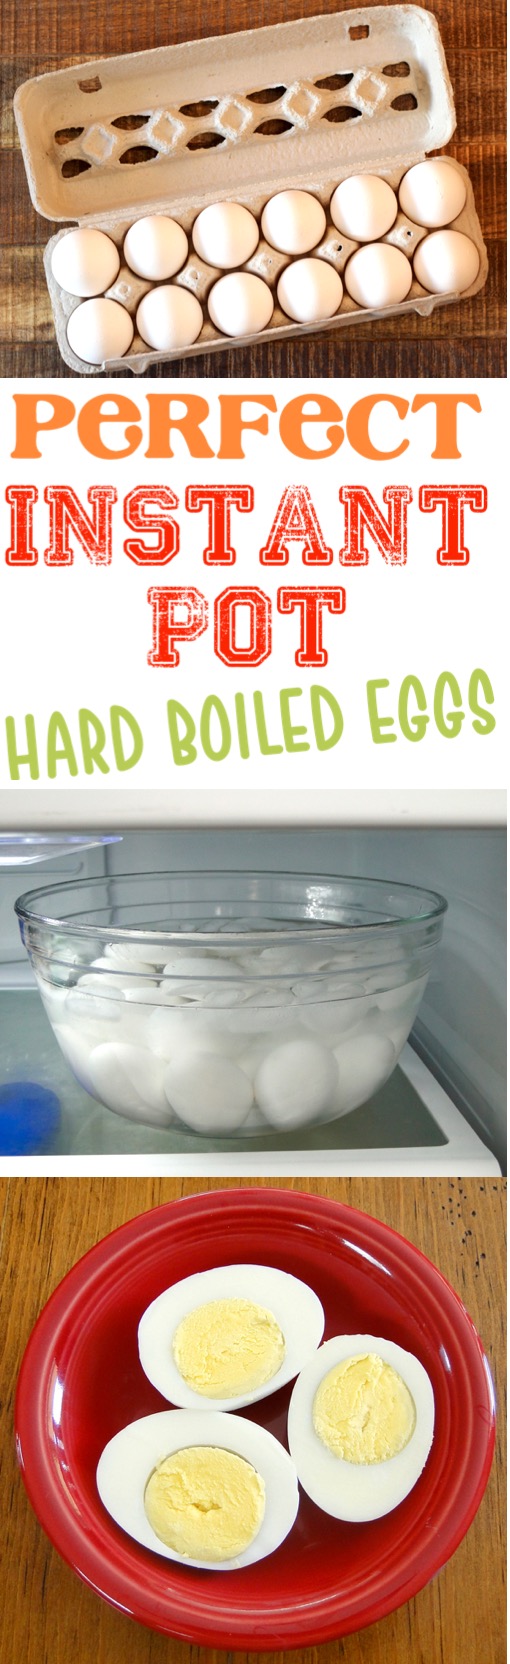 Instant Pot Eggs Hard Boiled Easy Pressure Cooker Egg Recipe